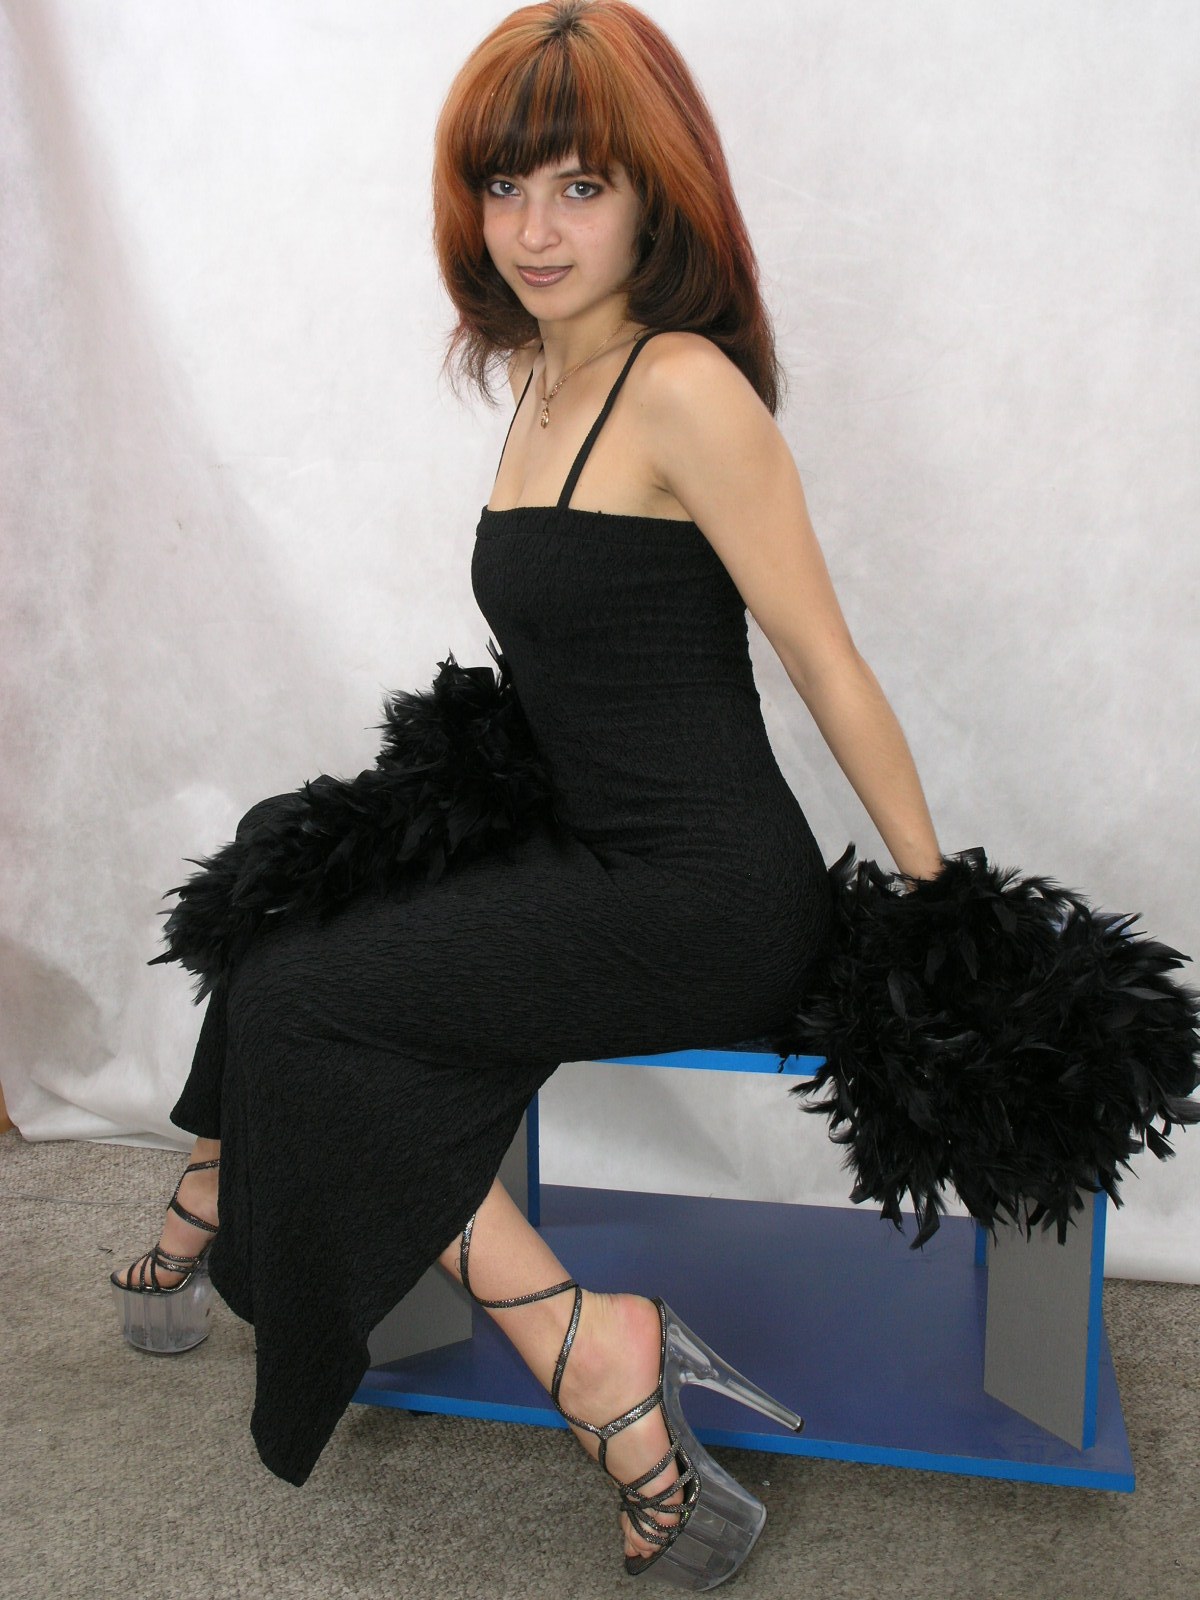 Redhead hottie in black dress